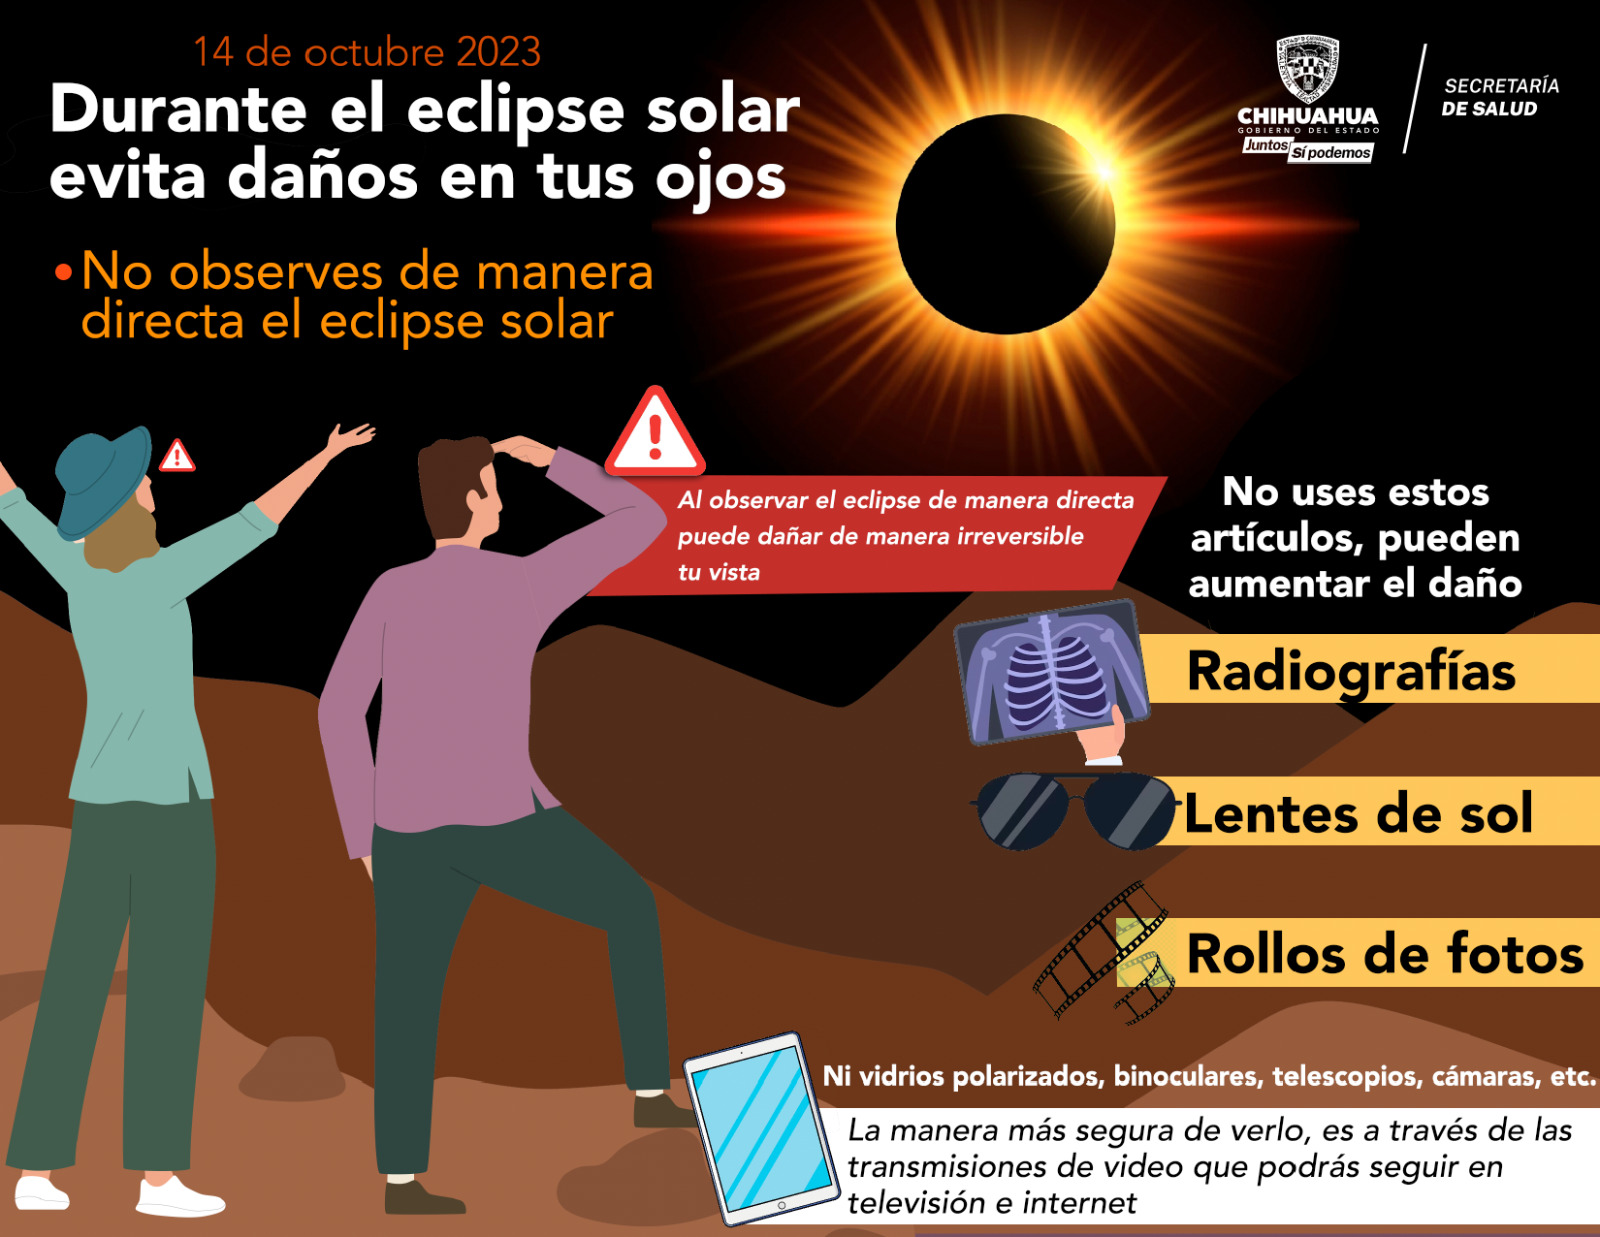 Exhorta Secretaría De Salud A Tomar Precauciones Al Observar El Eclipse